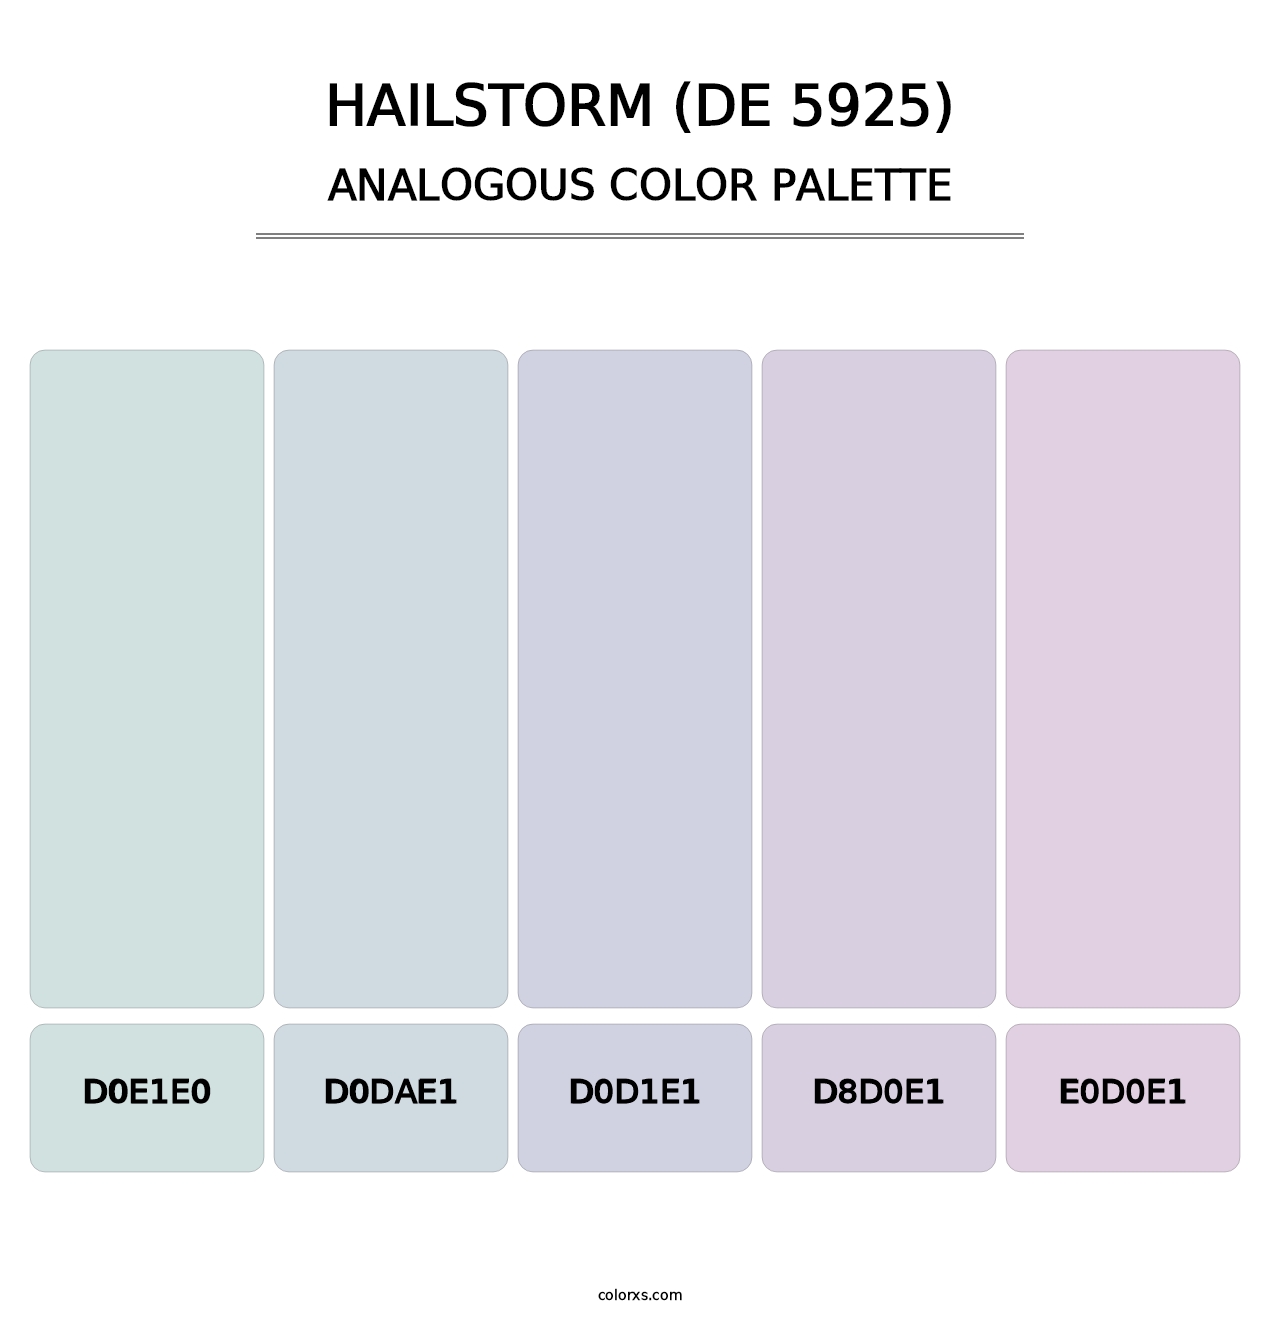 Hailstorm (DE 5925) - Analogous Color Palette